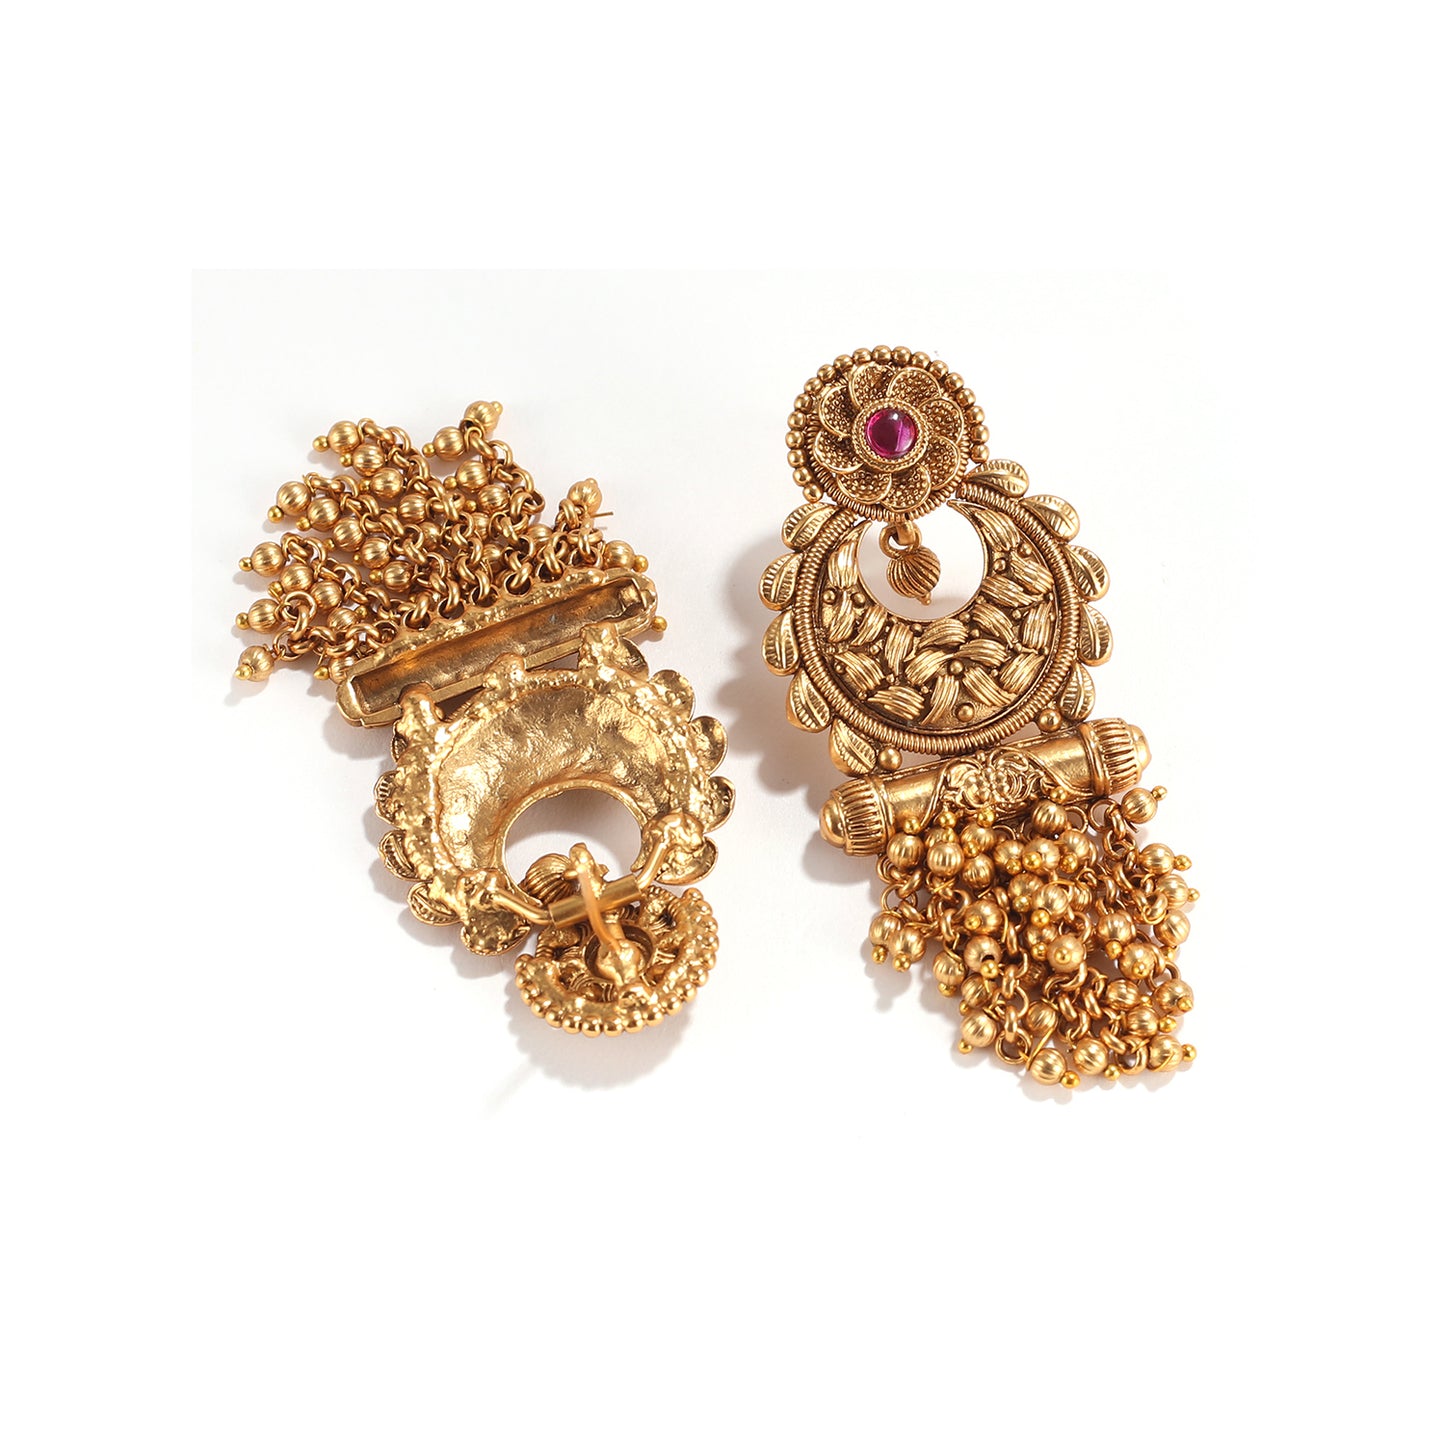 Vintage India Ruby Studded Dangler Earring